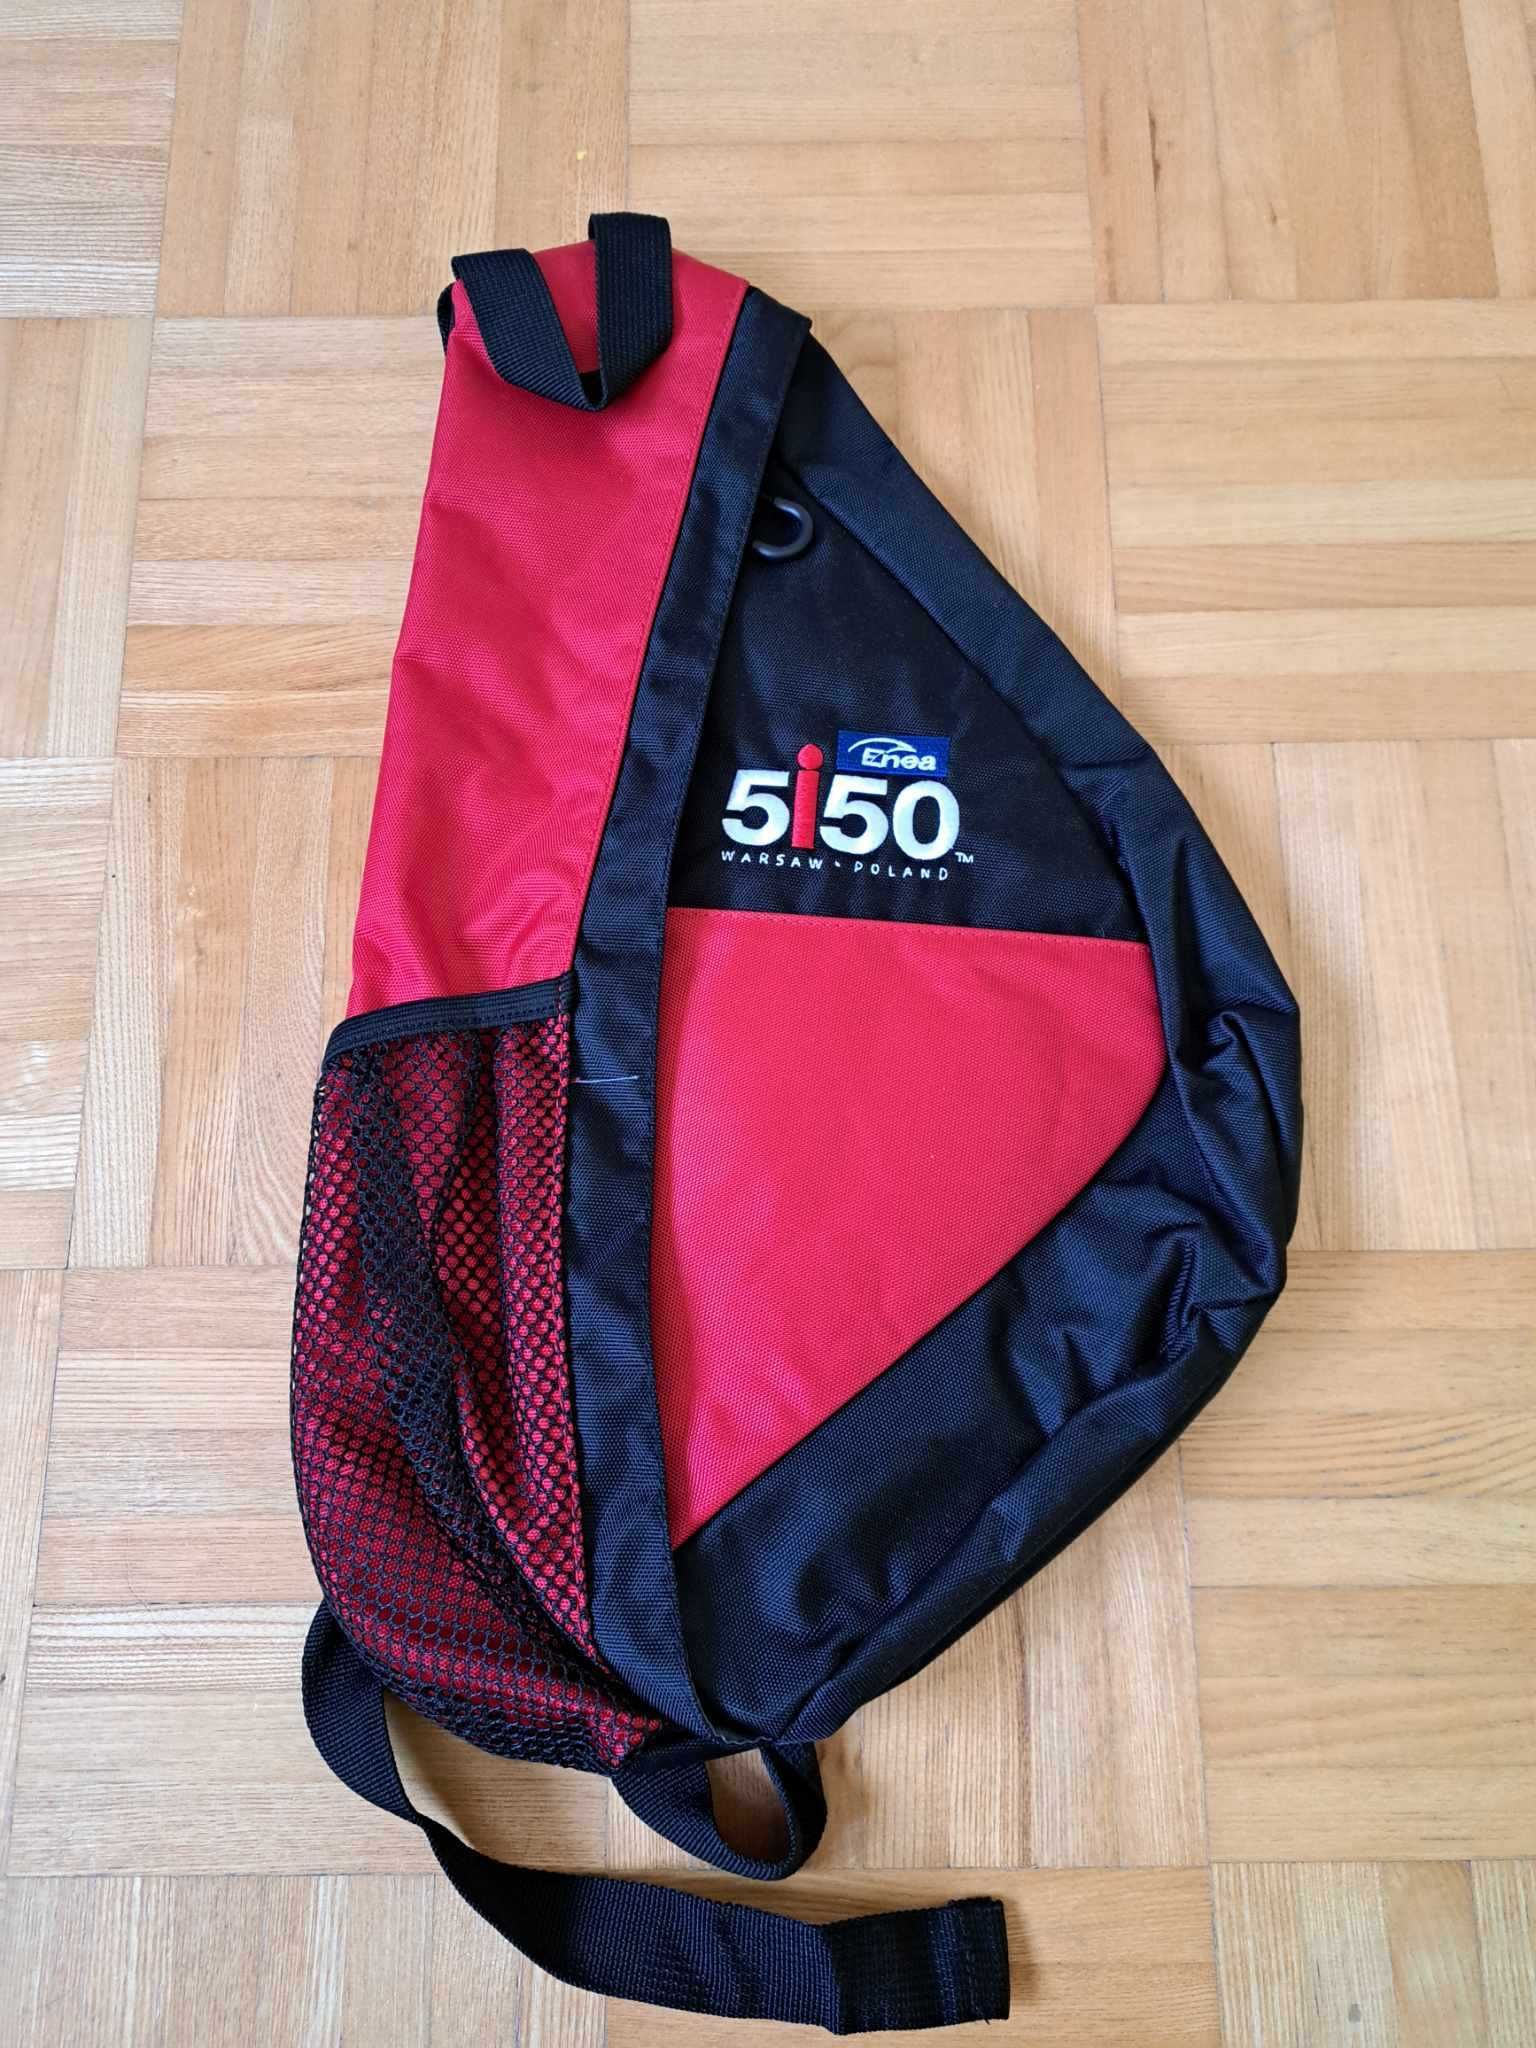 Ironman 5i50 - Nowy plecak triathlonowy na jedno ramie